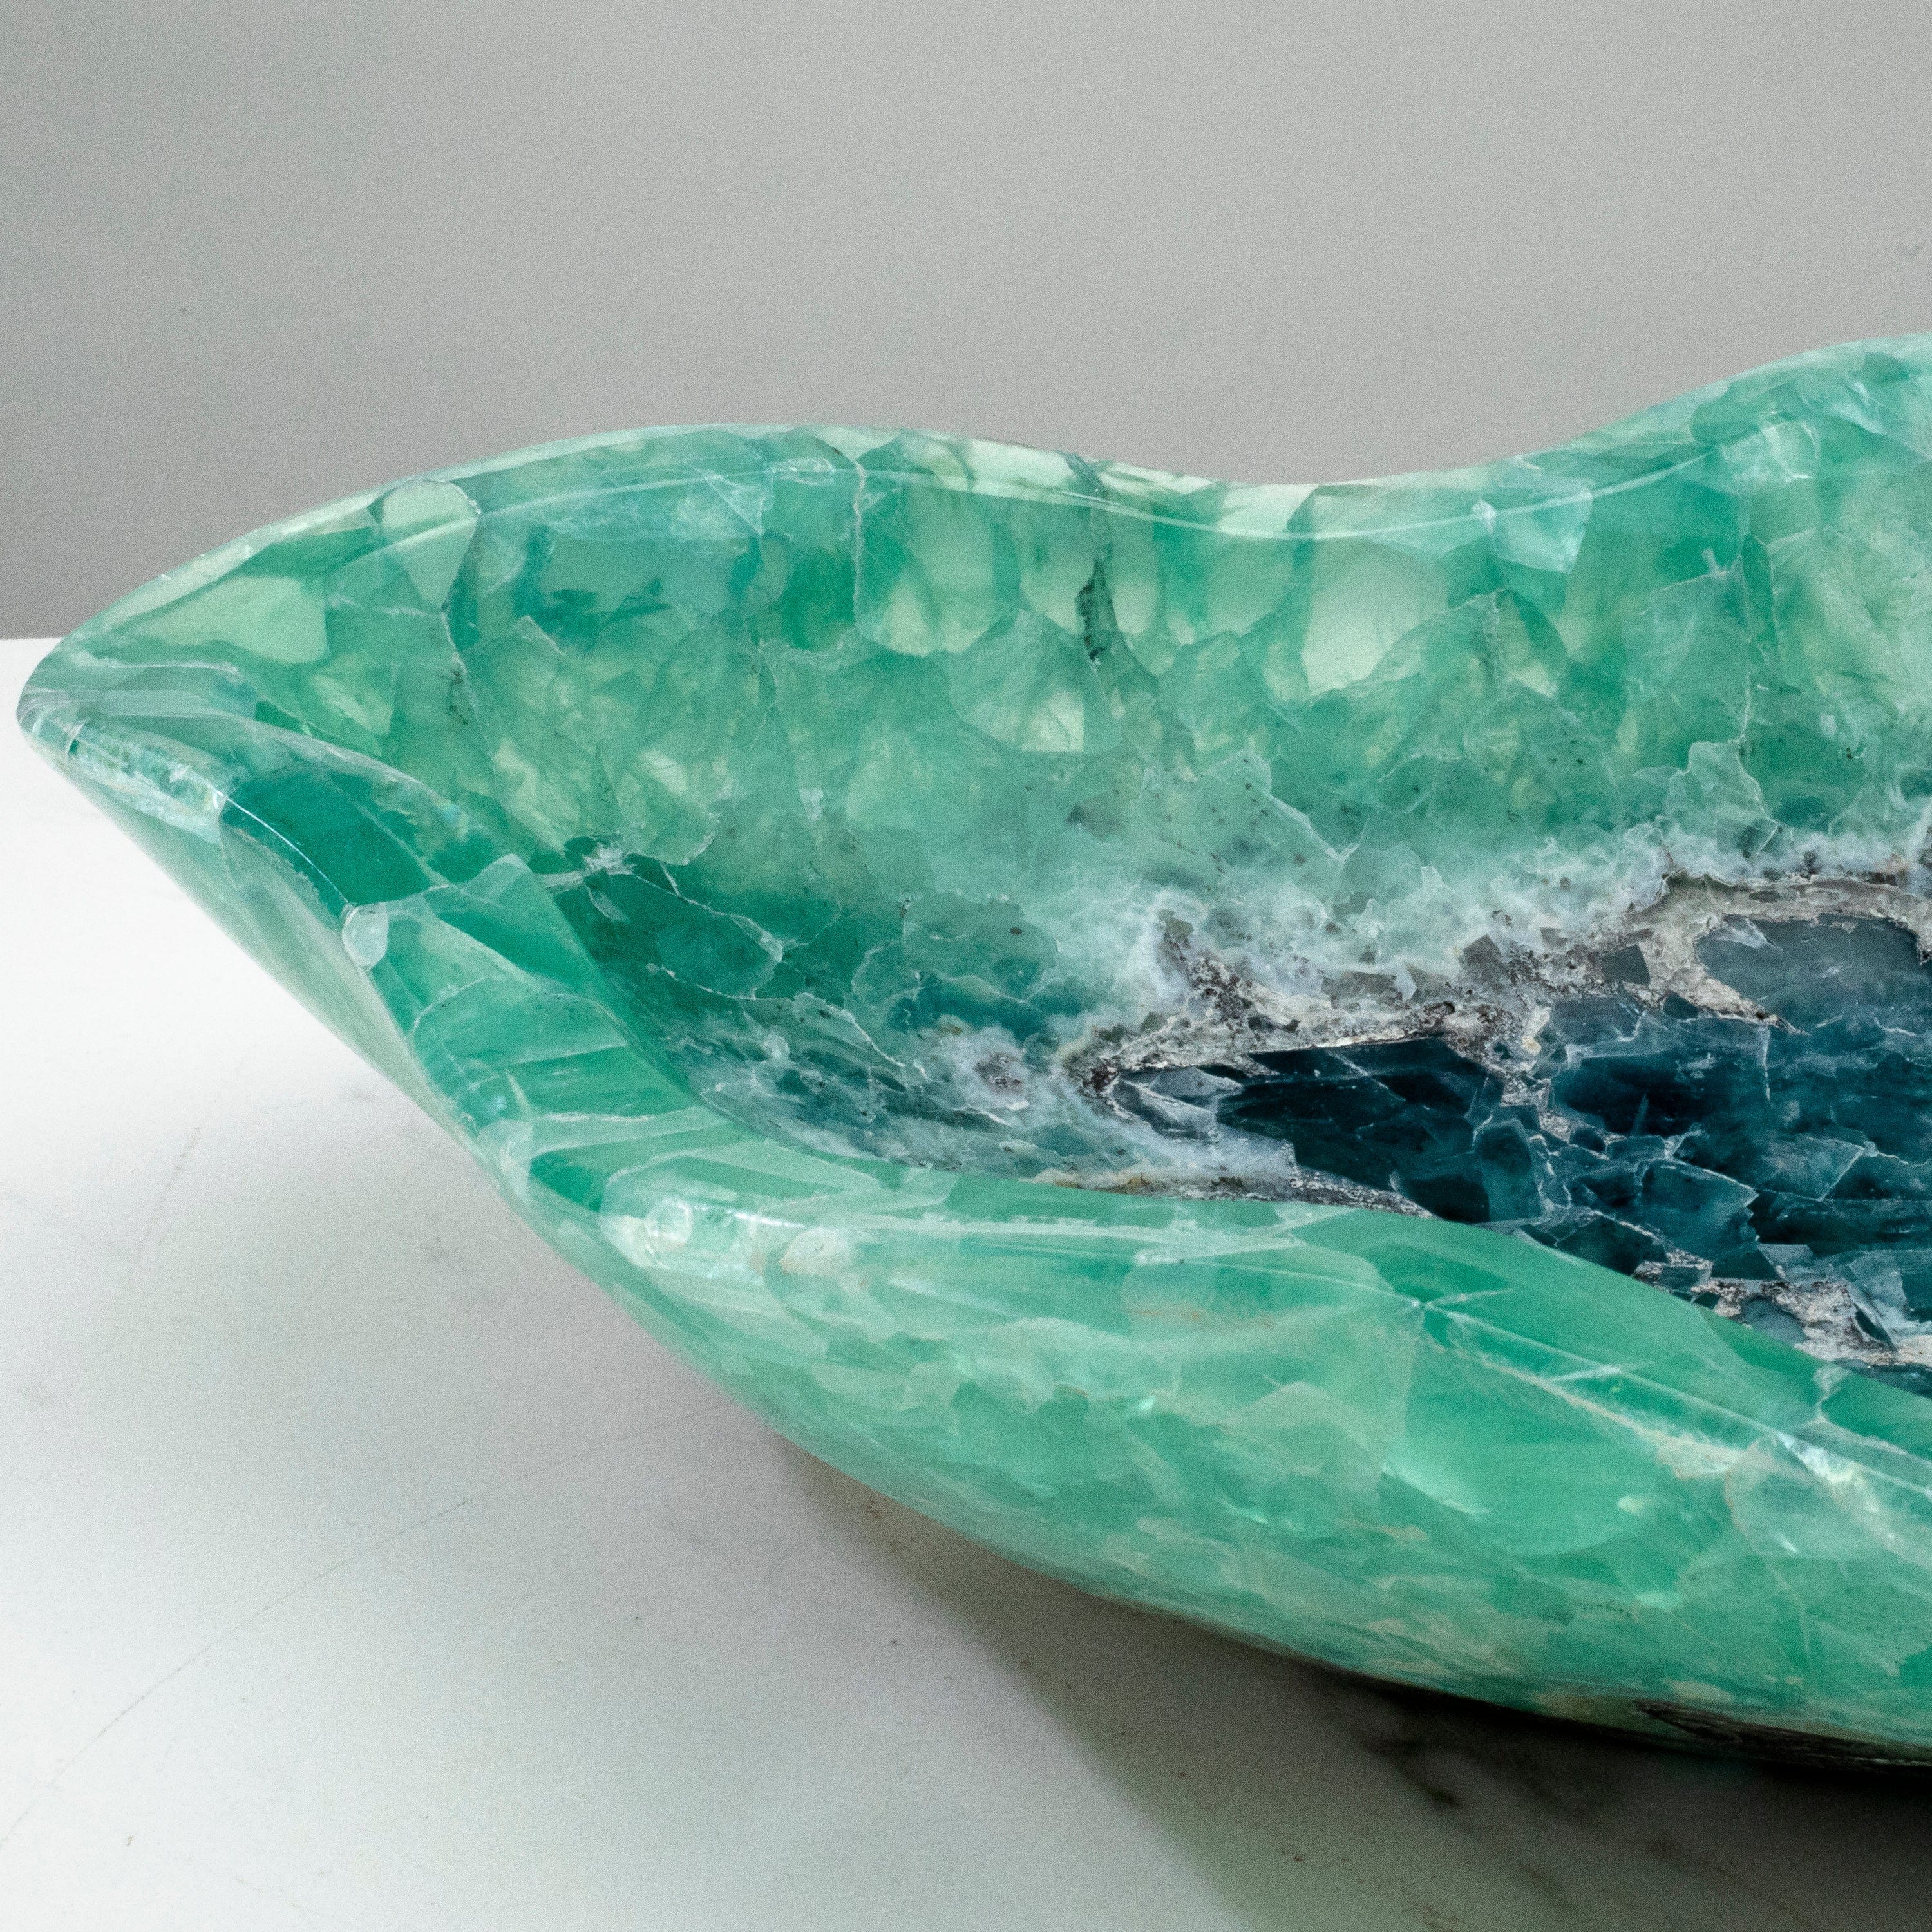 KALIFANO Gemstone Bowls Natural Blue / Green Fluorite Bowl 15.5" BFL7800.001